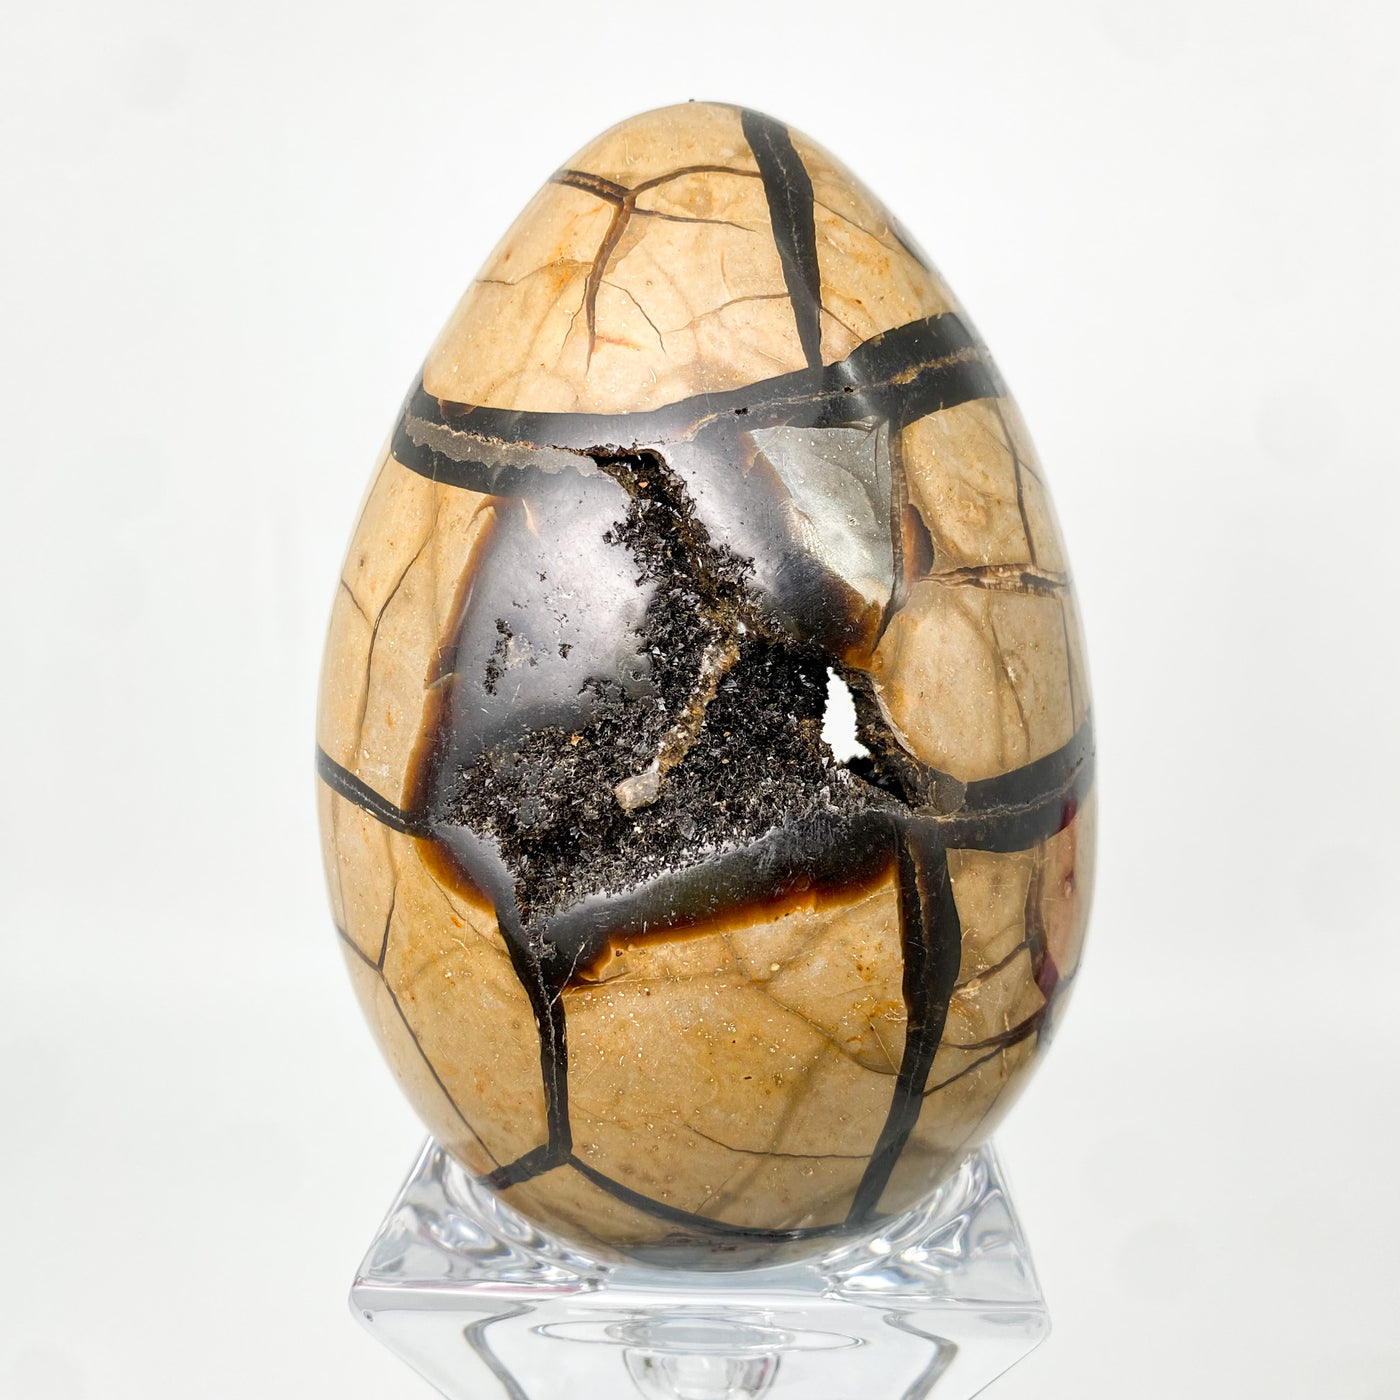 Septarian stone egg